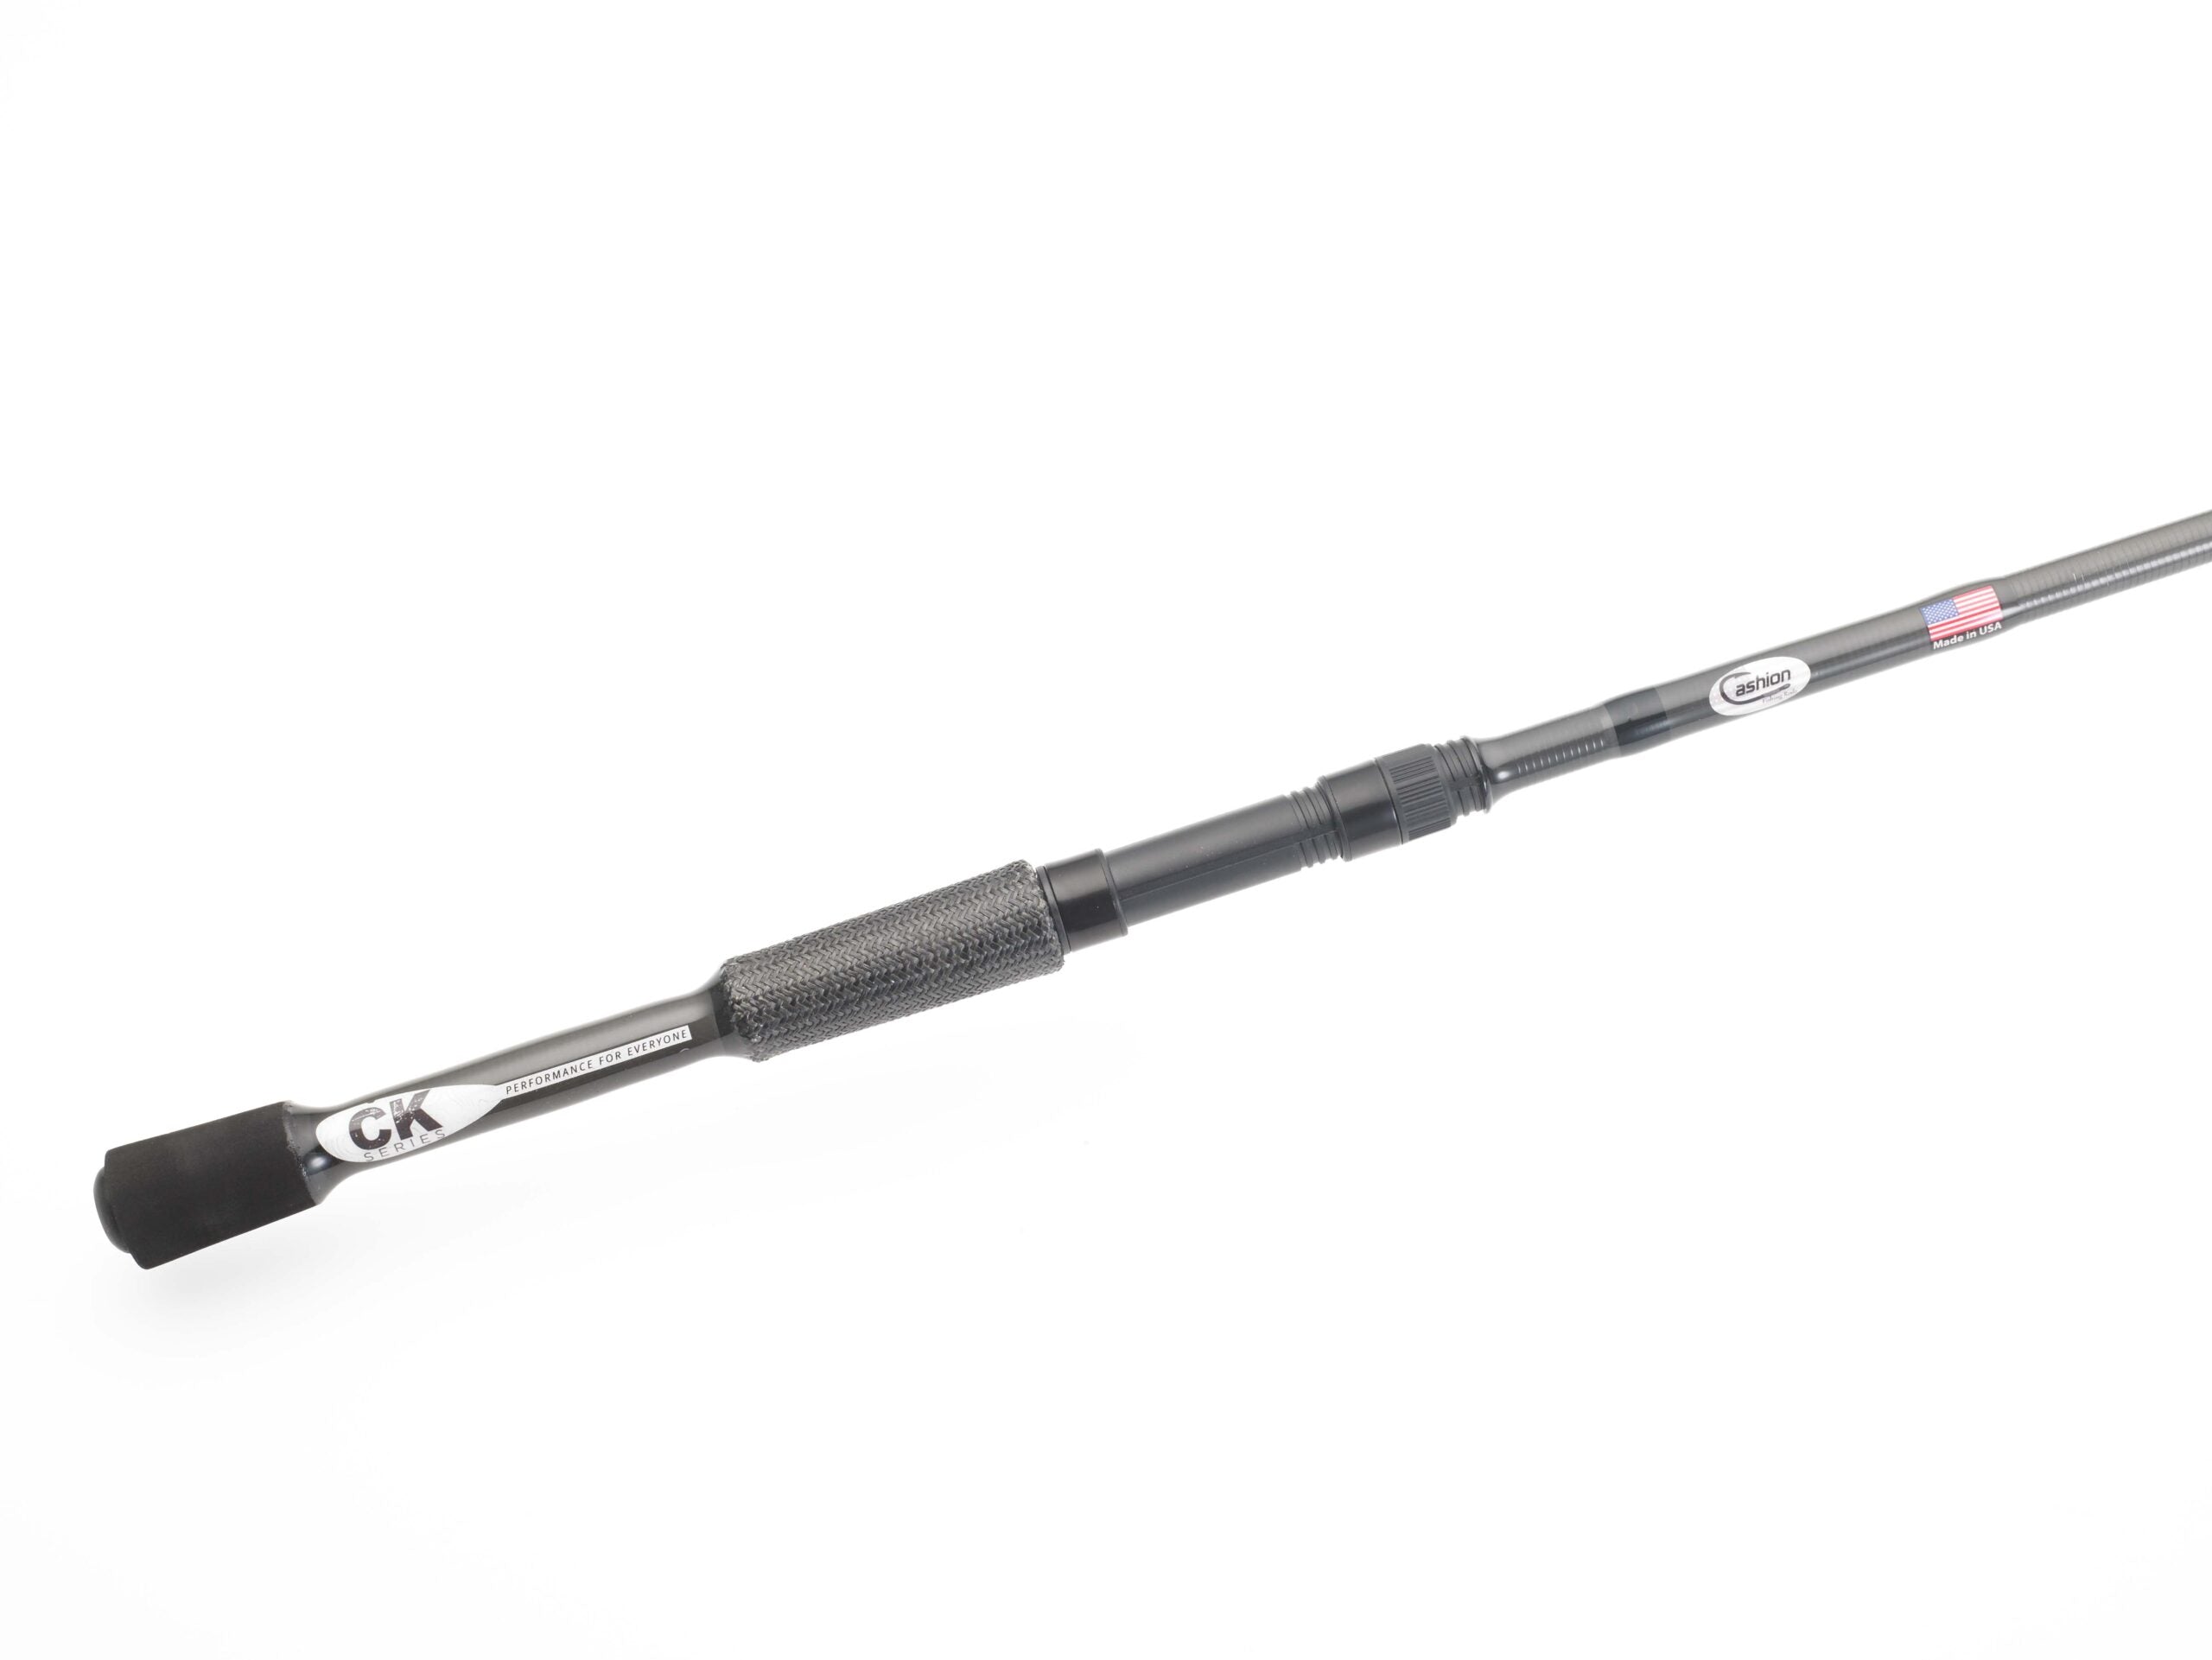 Telescopic Light & Tough Series Bass Rod, 7'4